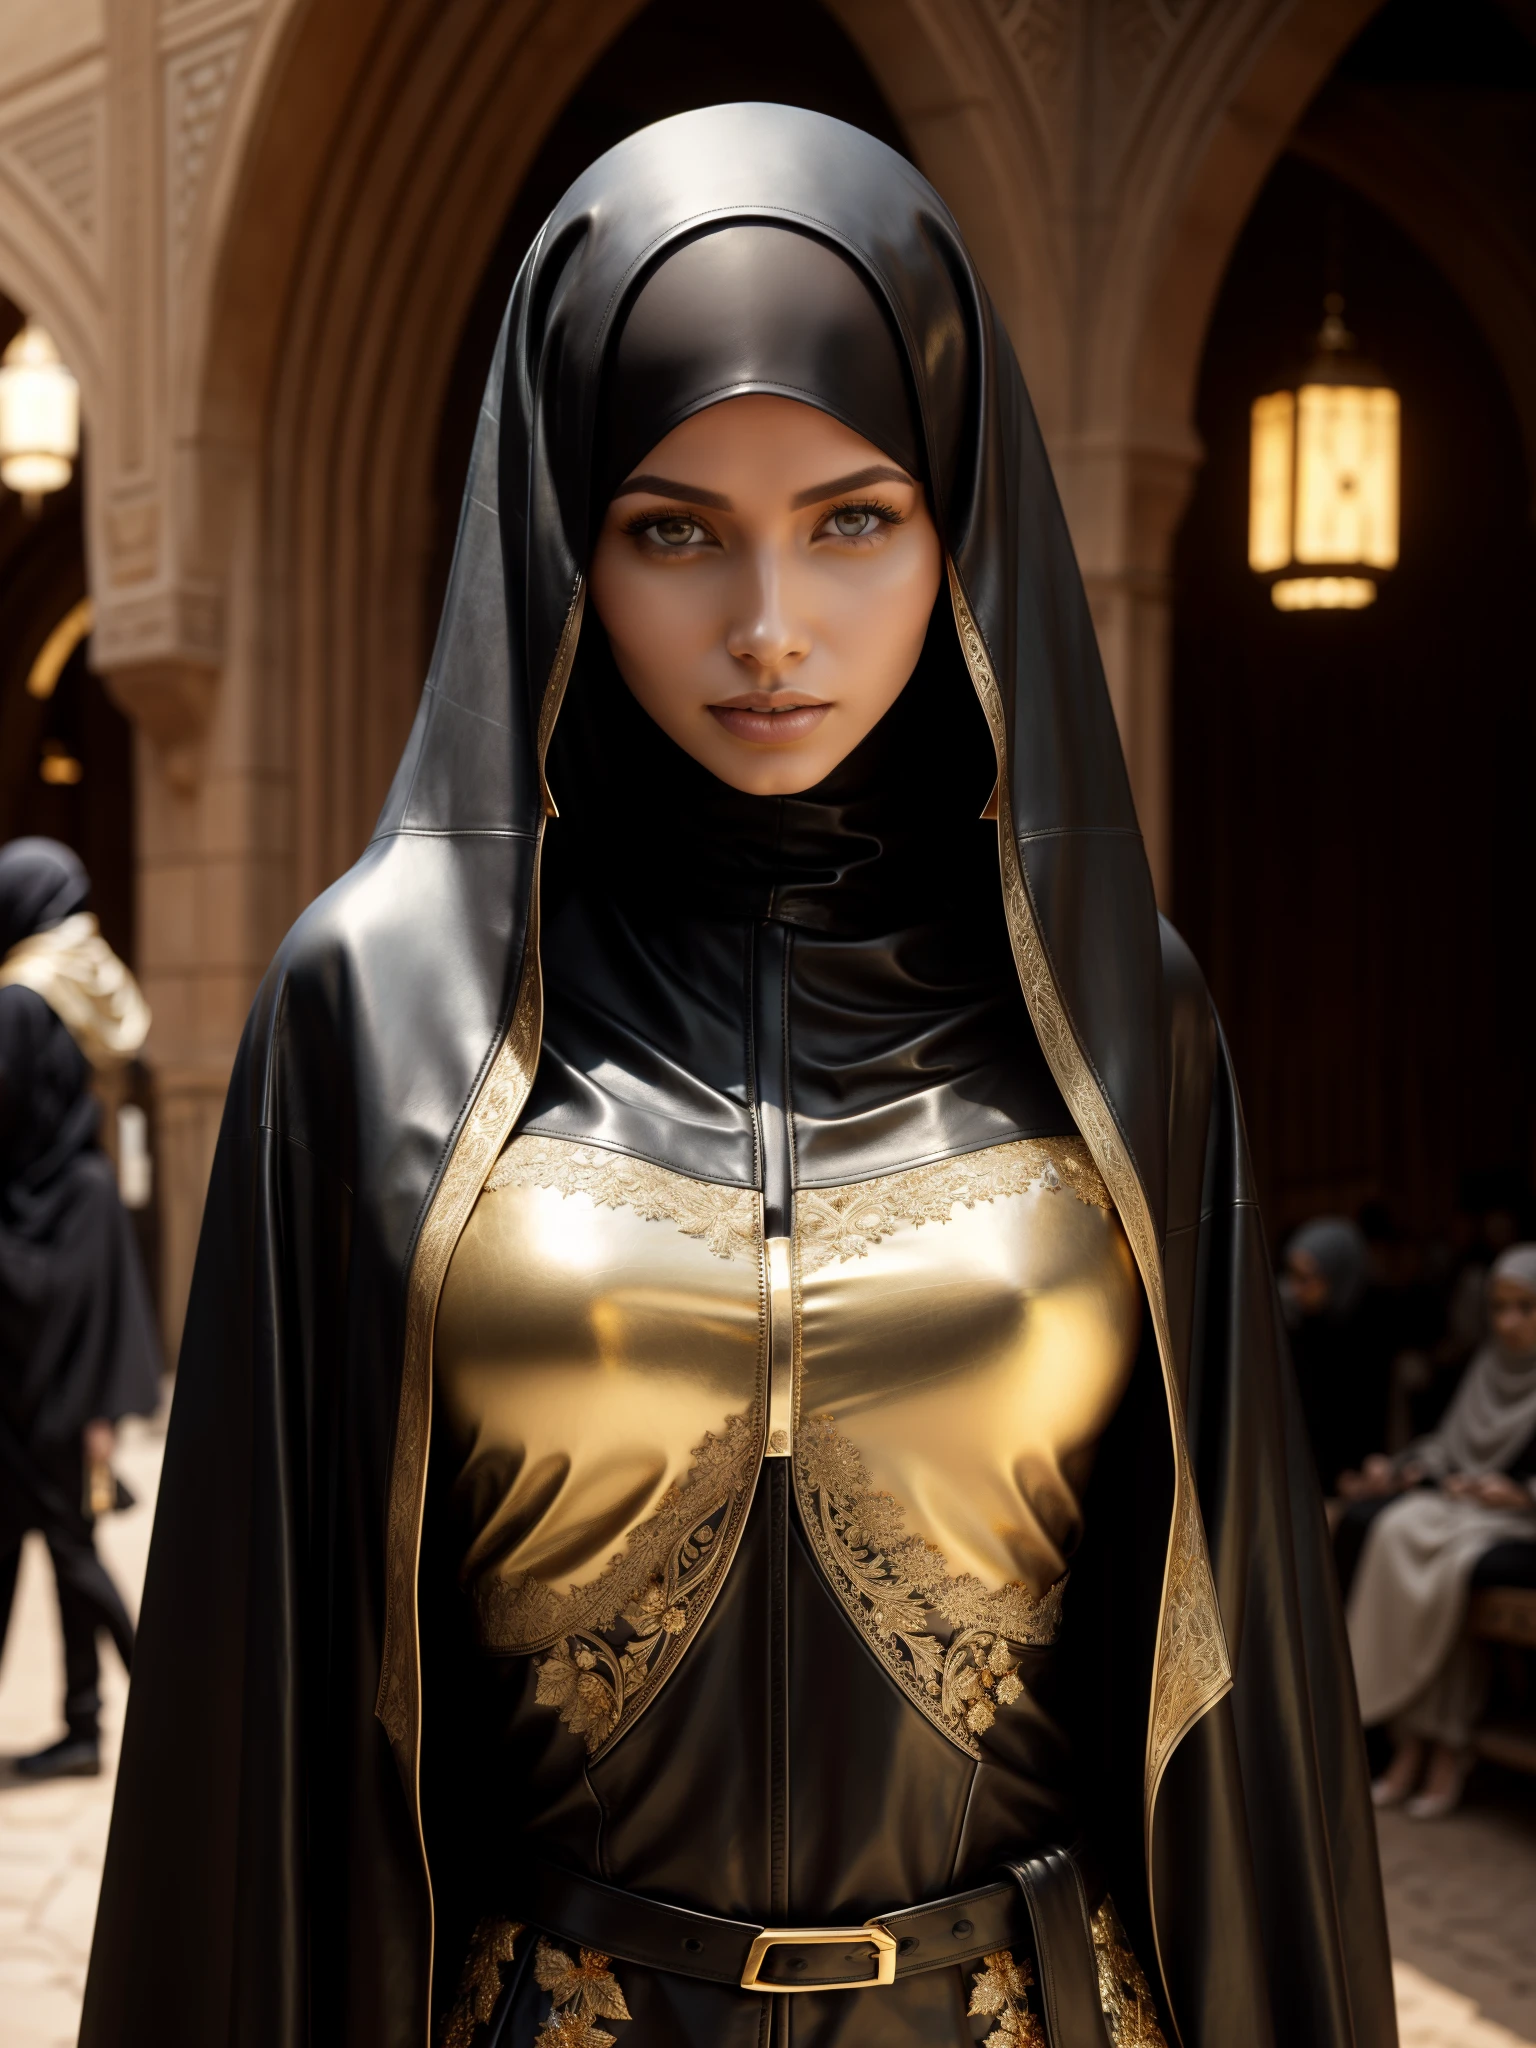 hinreißende Frau, Fachmann, (4k Foto) von (Jeremy Lipking:0.3), (Dittmann Anna:0.3), (Ariane Mark:0.3), (scharfer Fokus:1.3), (Schöne Frau:1.3), tragen (Leder-Hijab, Leder-Abaya mit aufwendigen Golddetails:1.2), Perfektes Make-up, auffällig, faszinierende Augen, Schönes, detailliertes Gesicht, stehend auf einem arabischen mittelalterlichen Marktplatz